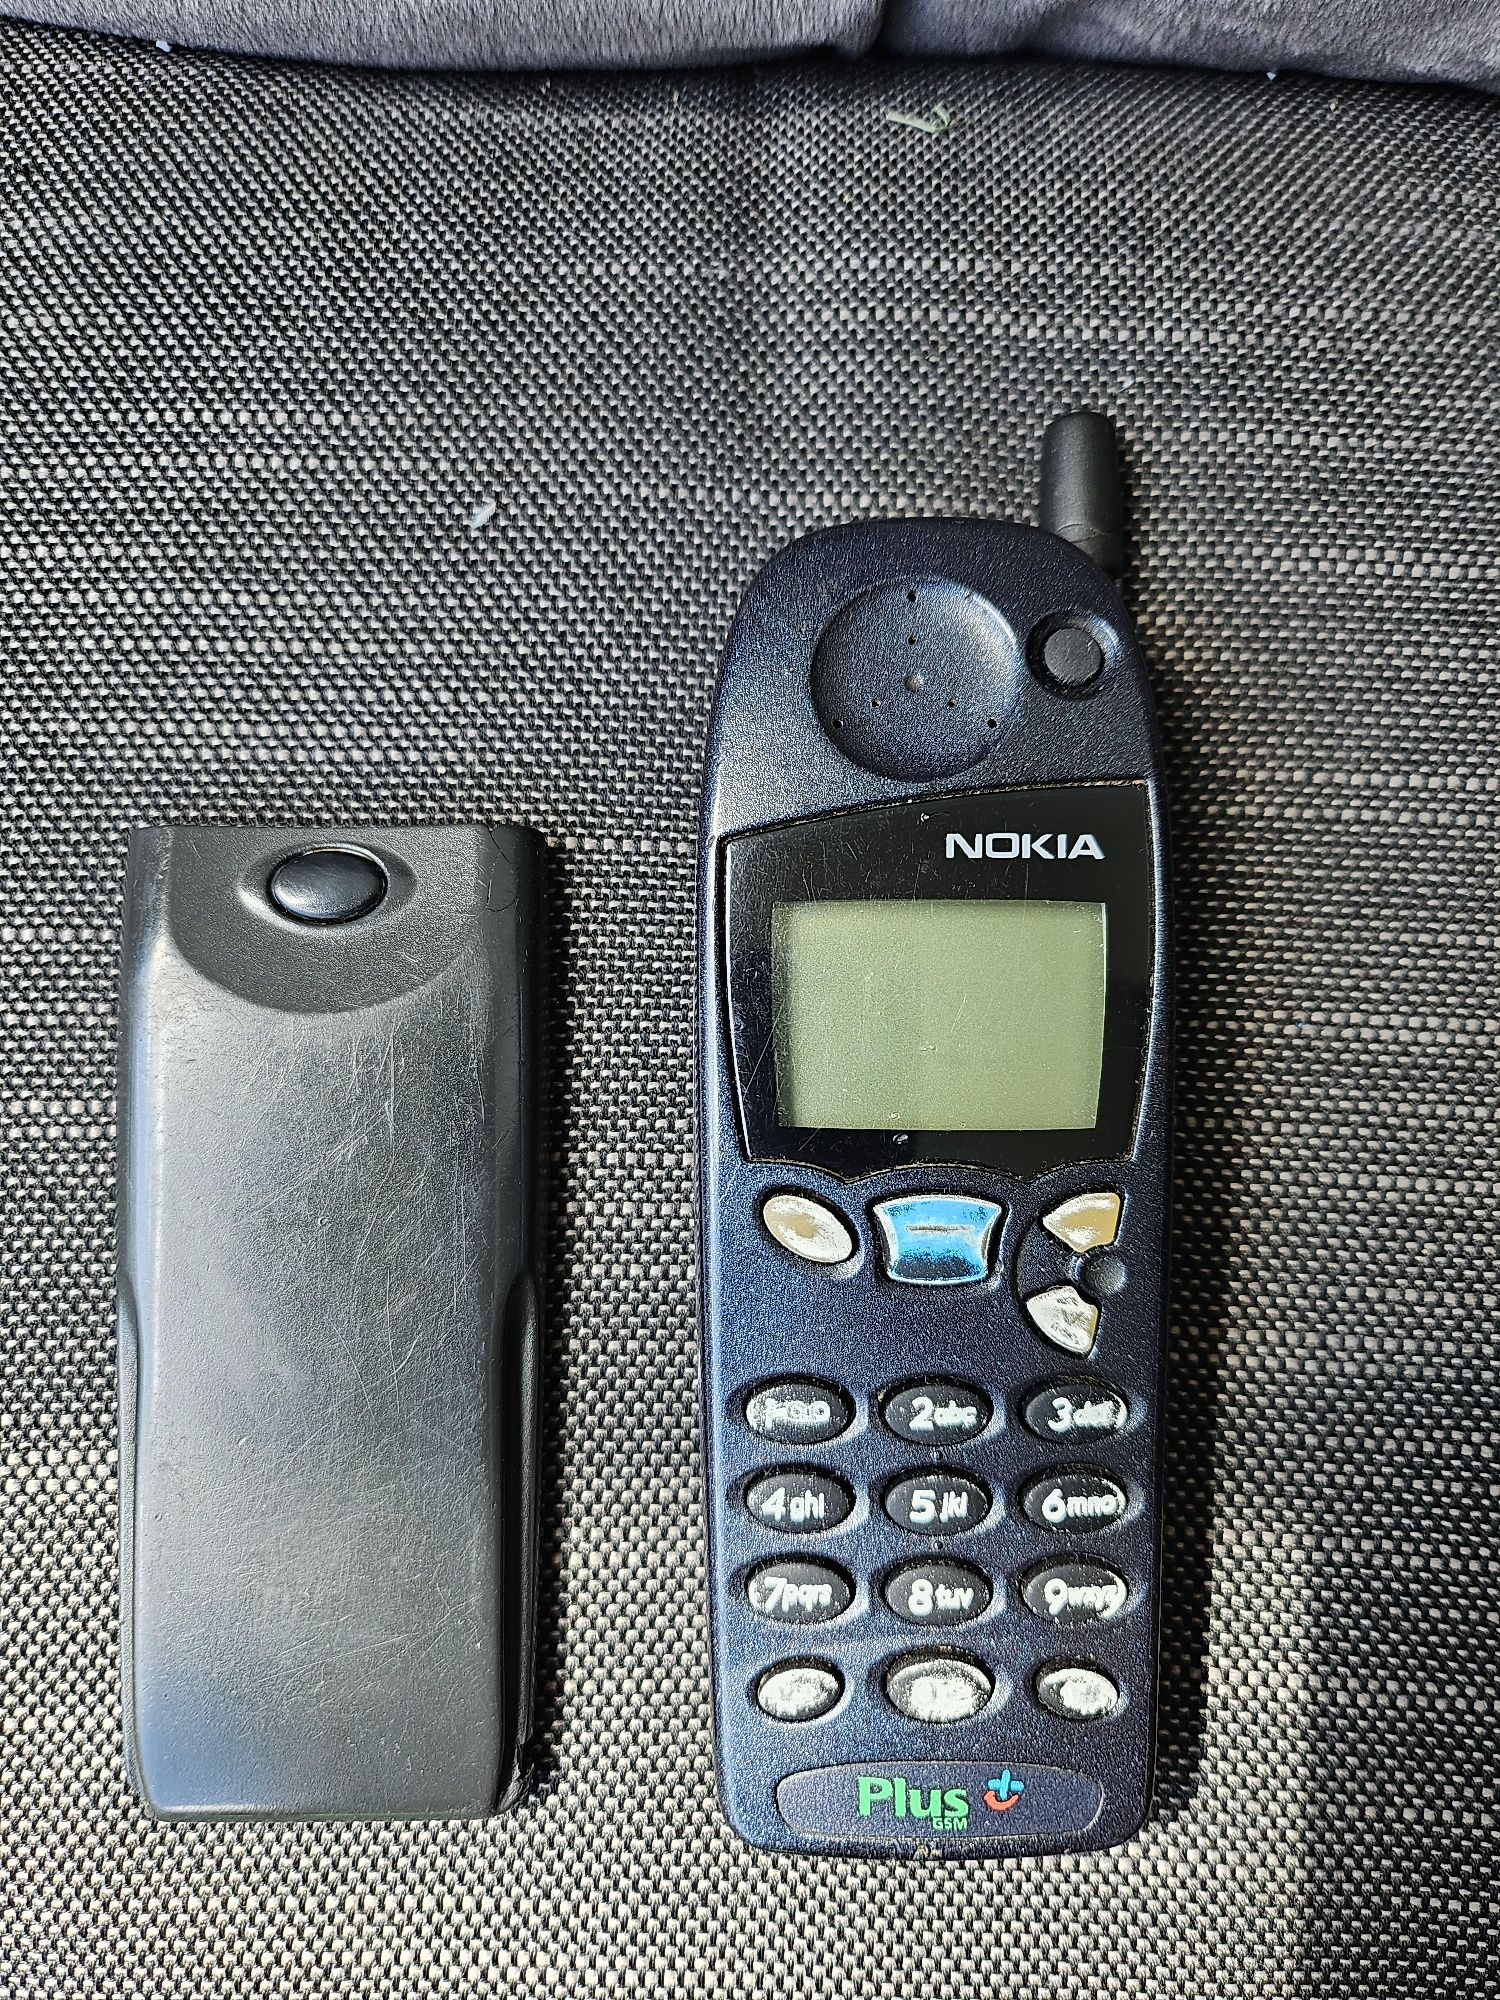 Nokia 5110 do kolekcji